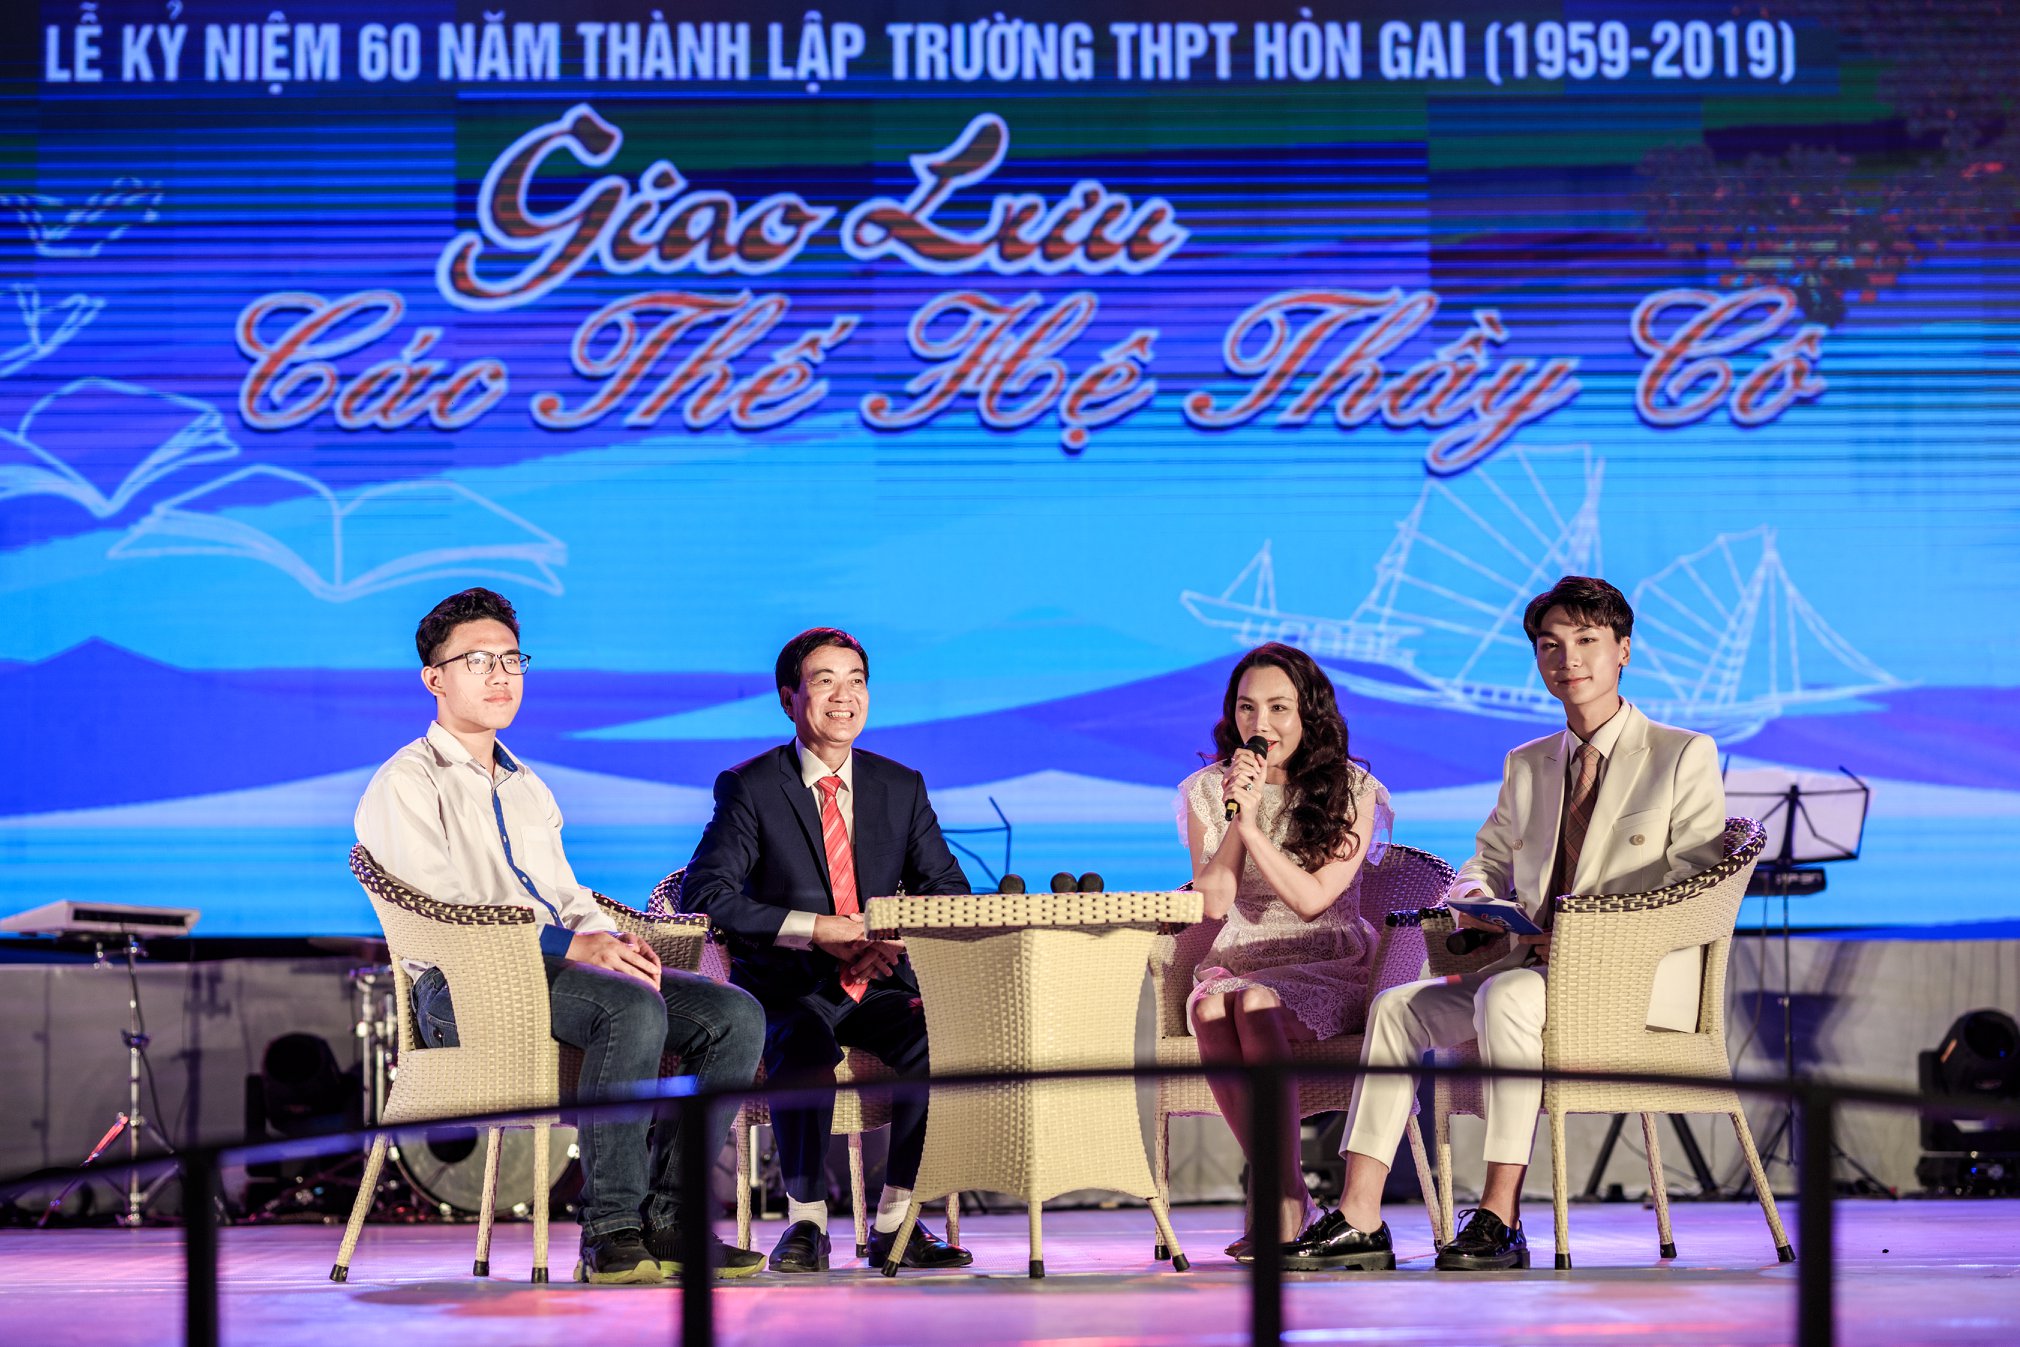 Thầy Nguyễn Linh (thứ 2, từ trái sang) trong chương trình giao lưu các thế hệ thầy cô tại Lễ kỷ niệm 60 năm thành lập trường THPT Hòn Gai. 